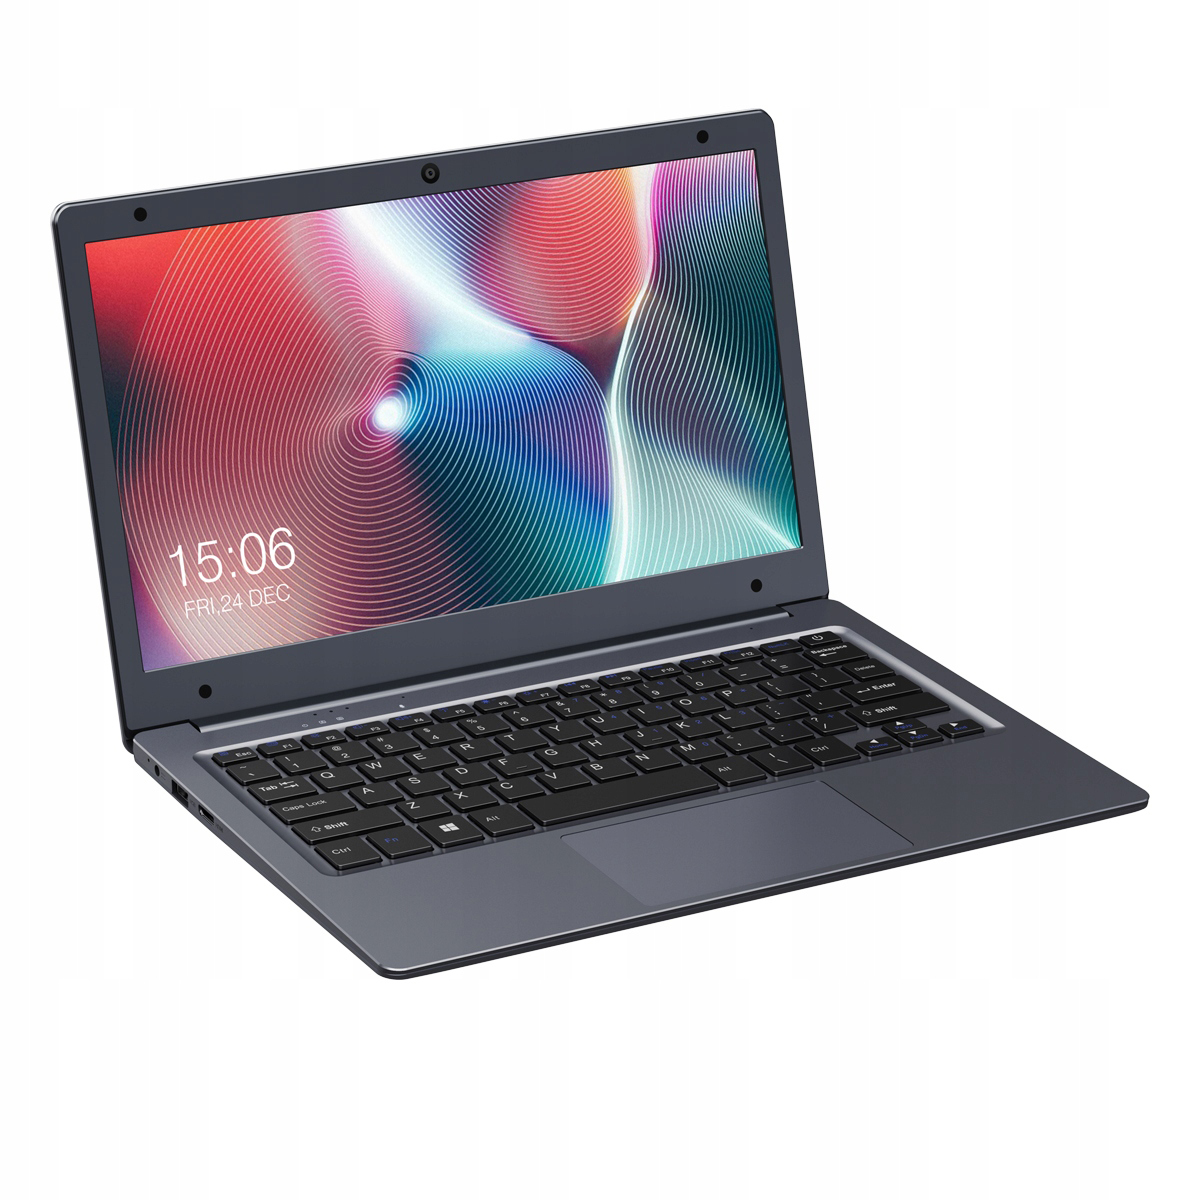 Chuwi Laptops - Chuwi Laptop Price in Bangladesh 2022 - Daraz ...